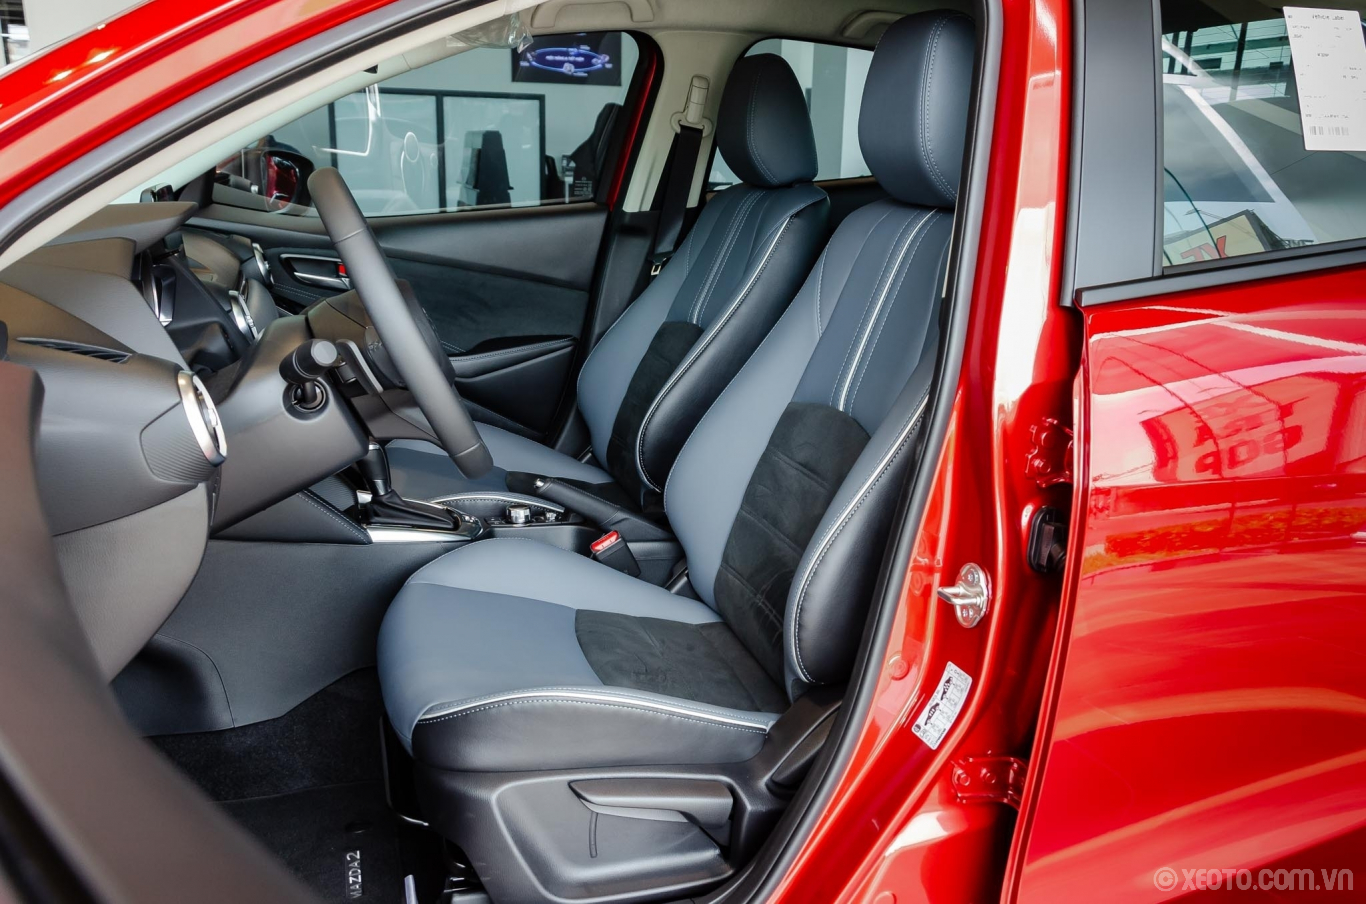 Hình ảnh nội thất Mazda 2 và Video chi tiết | Auto5